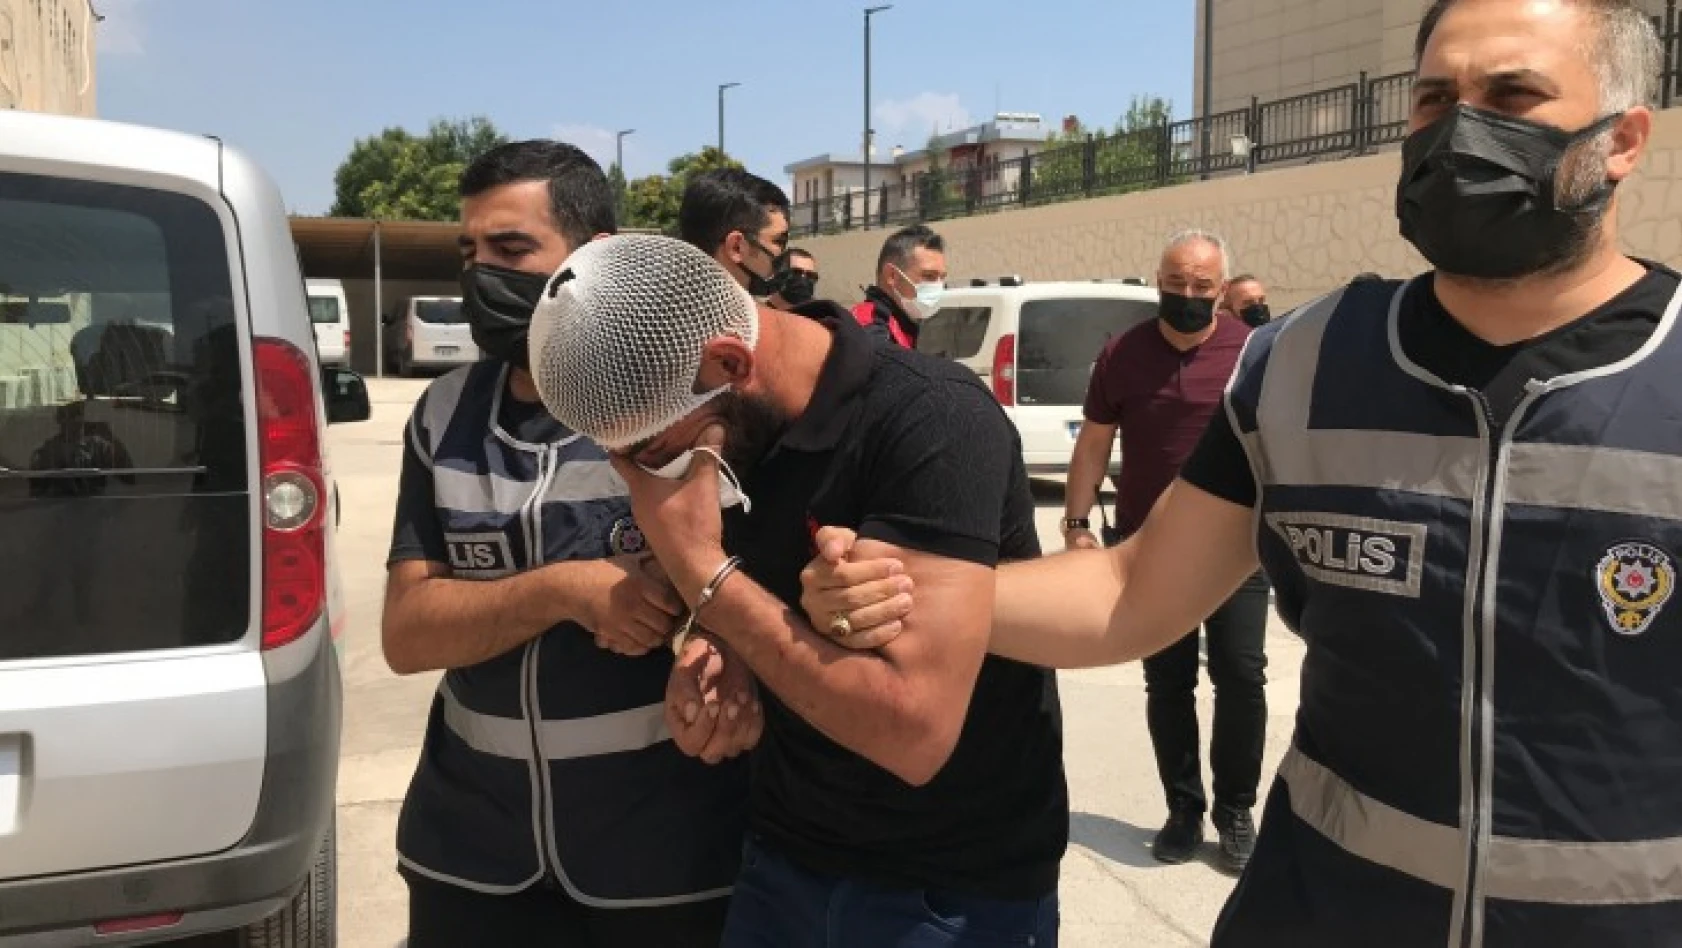 Elazığ'da 1 kişiyi öldürüp 6 kişiyi yaralayan şüpheli adliyeye sevk edildi